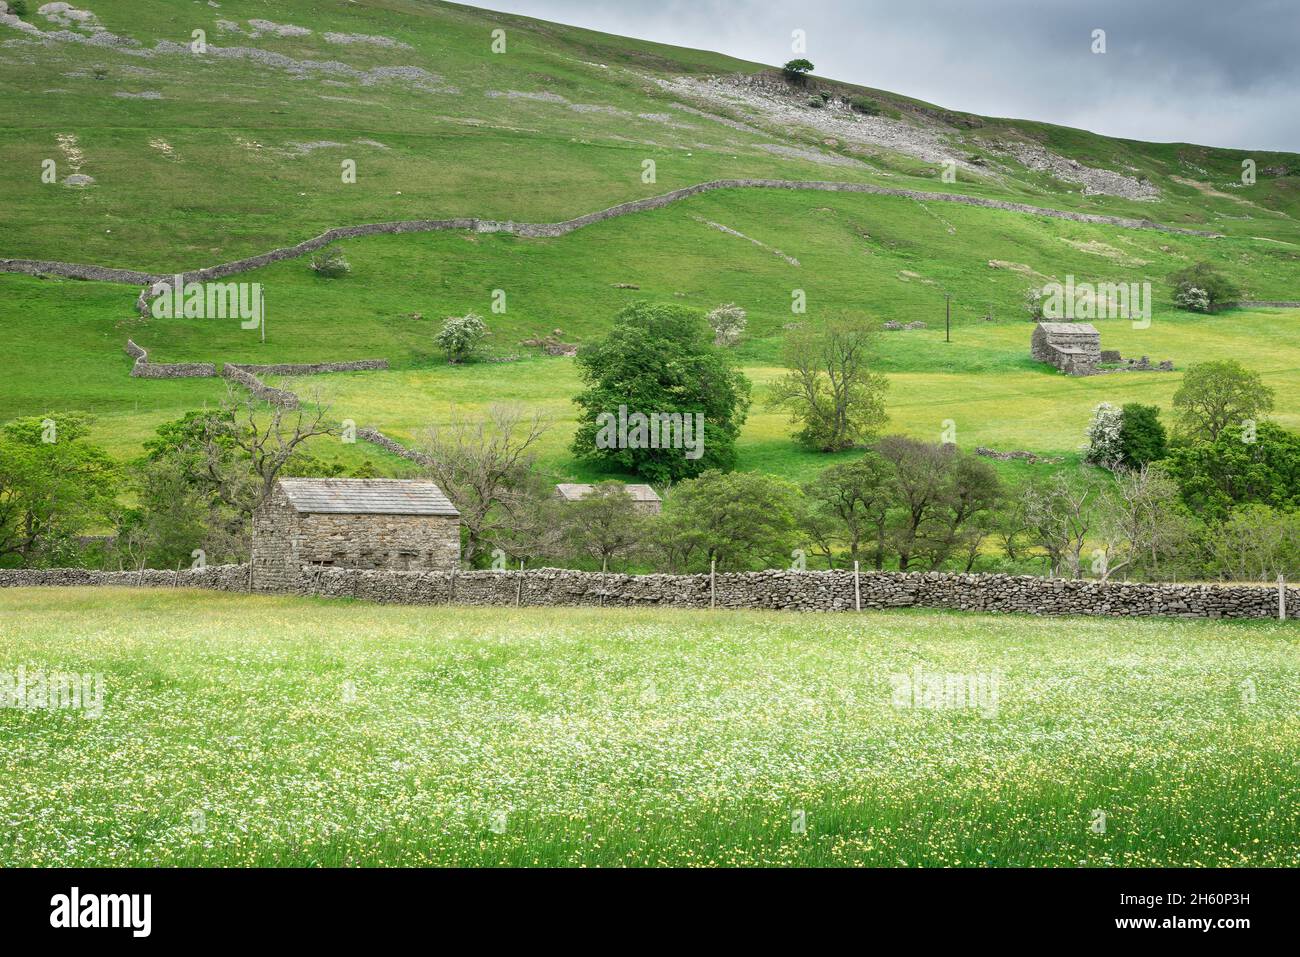 North Yorkshire Dales, vista in tarda primavera di tradizionali fienili e muri in pietra a secco in terreno agricolo vicino al villaggio di Gunnerside, Swaledale, Inghilterra, Regno Unito Foto Stock